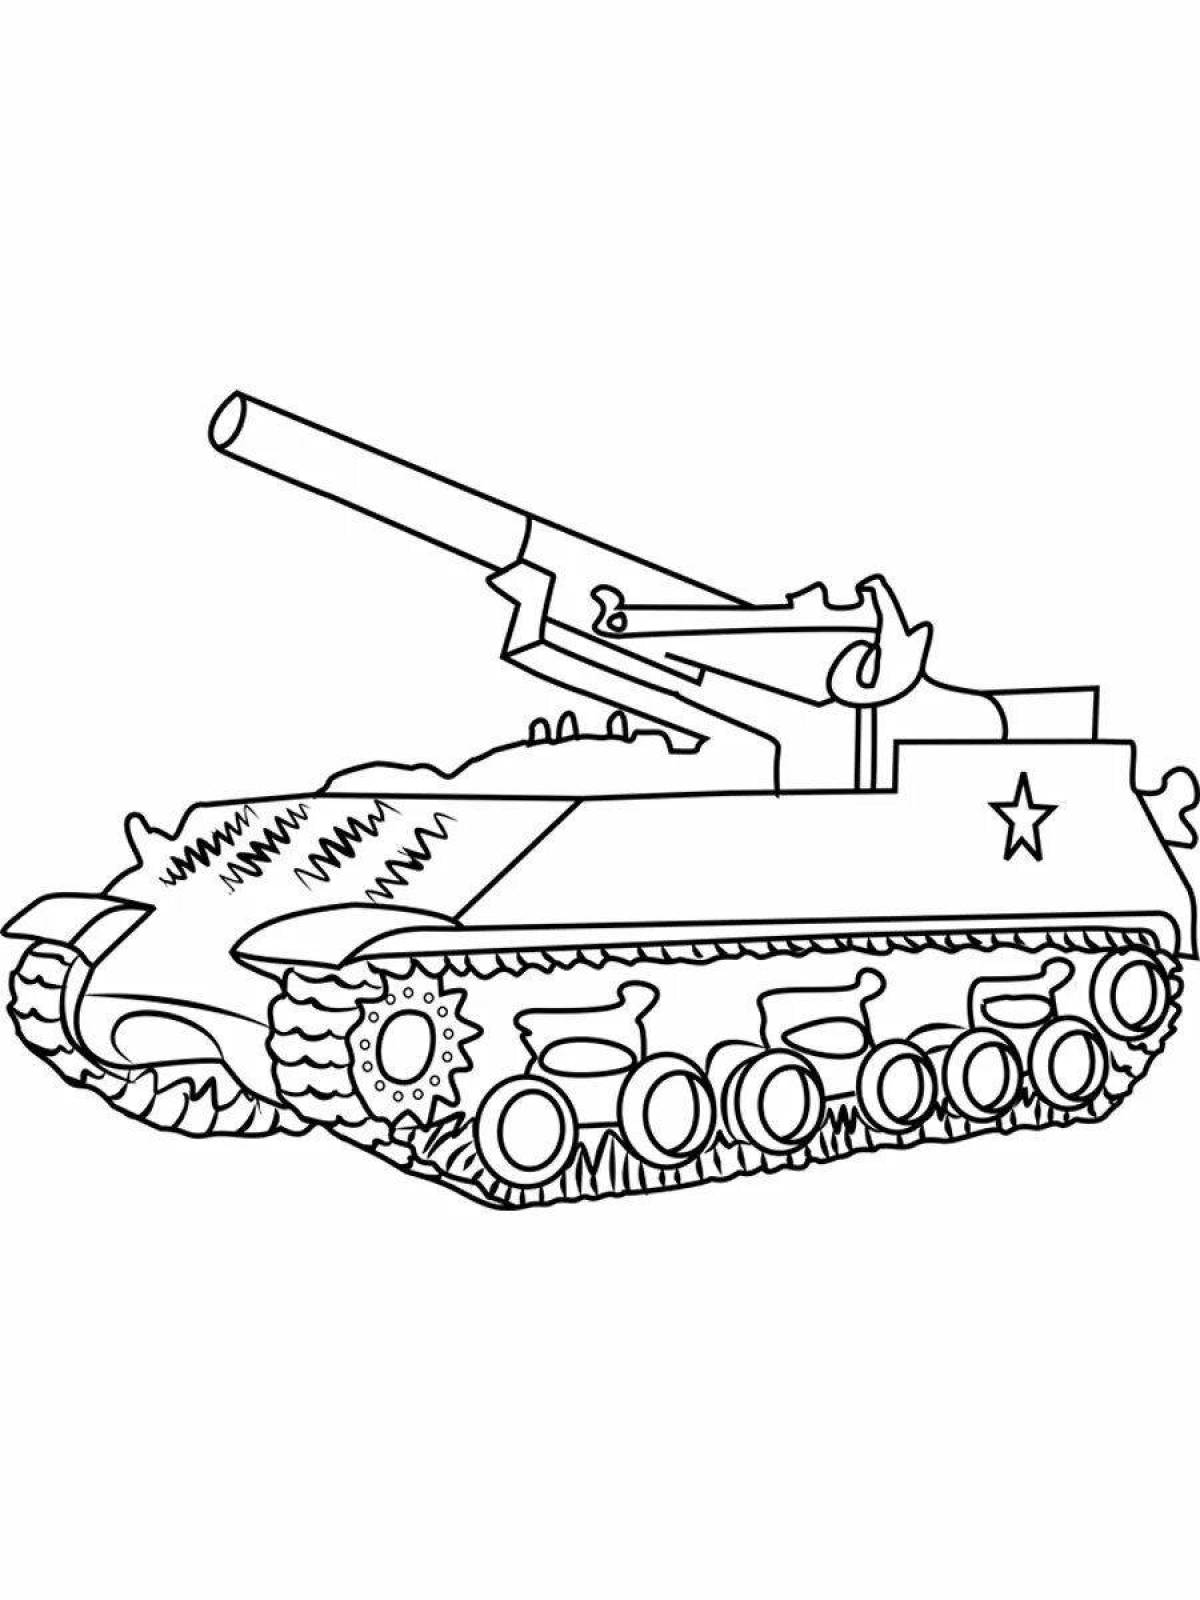 Раскраска выдающийся танк кв44